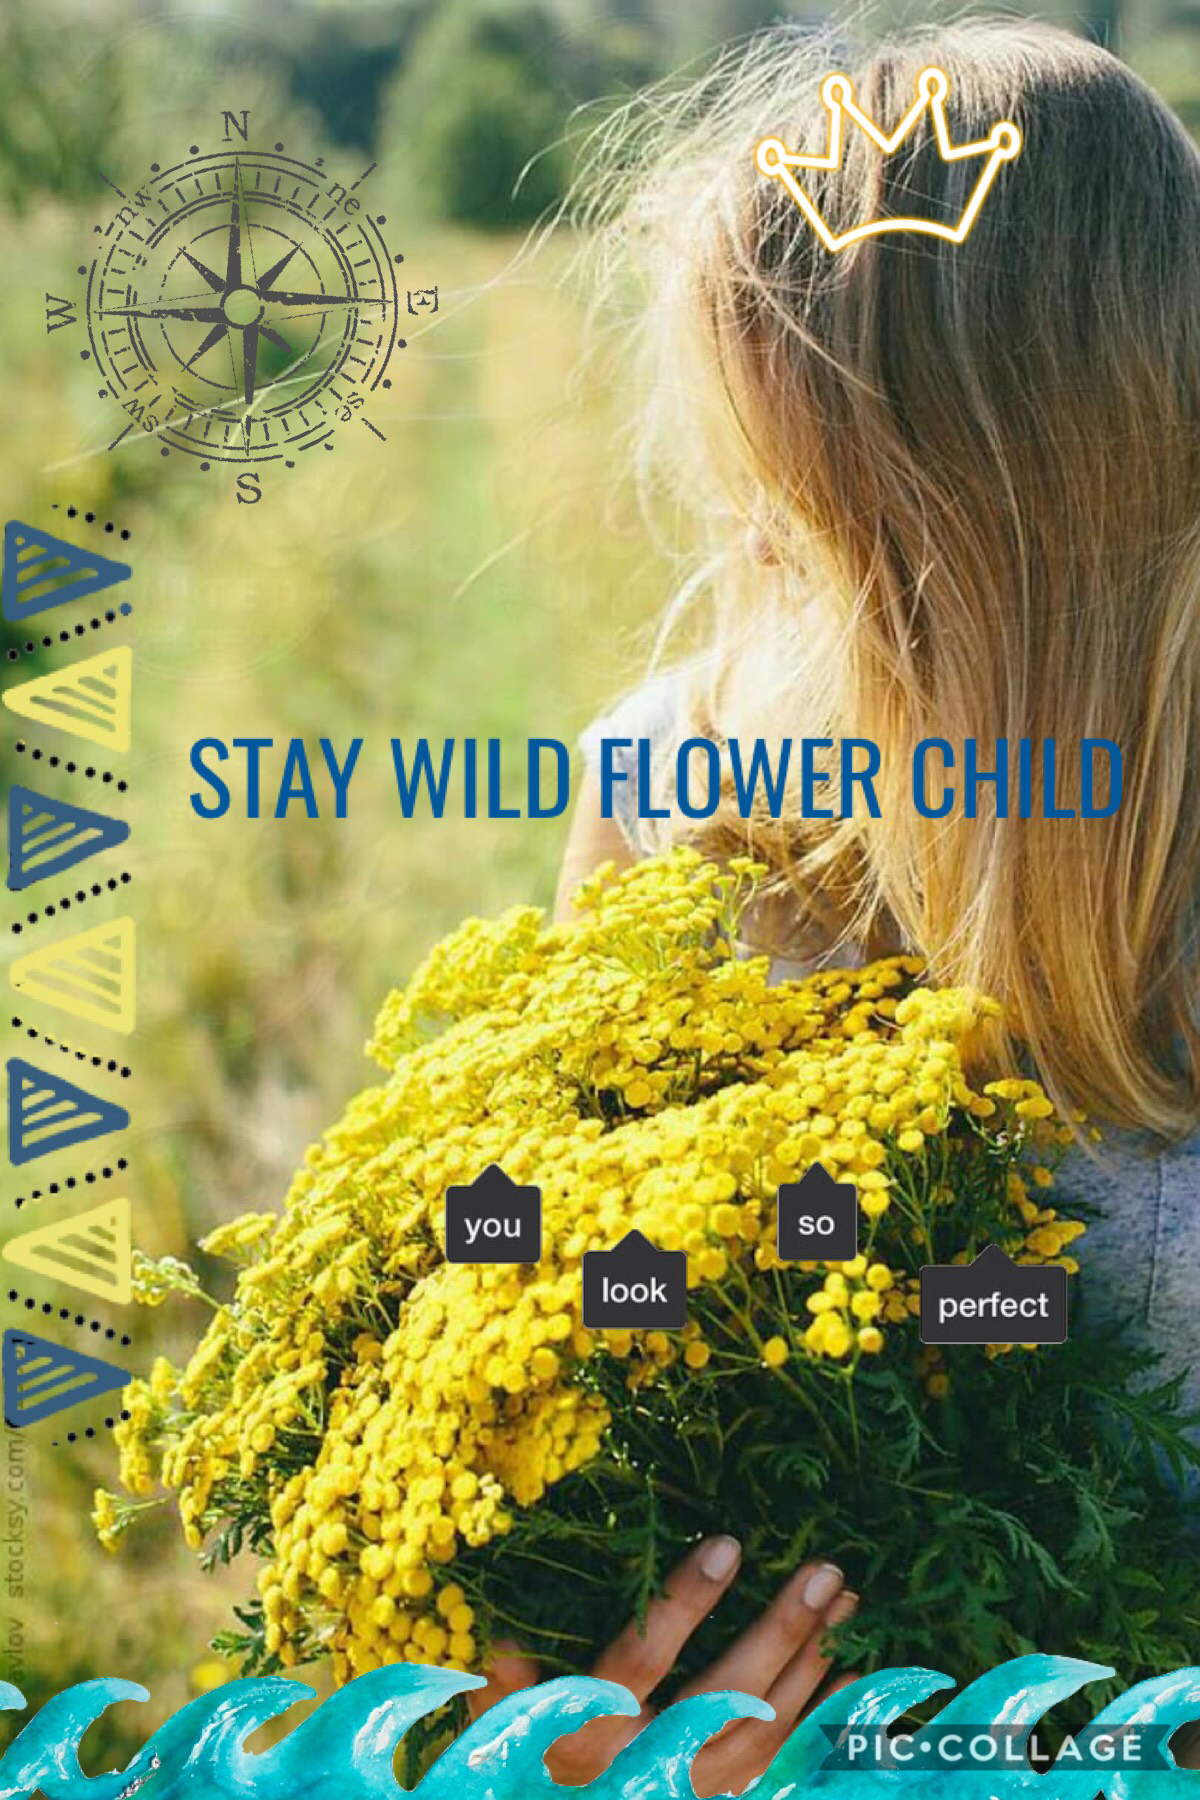 Stay wild flower child